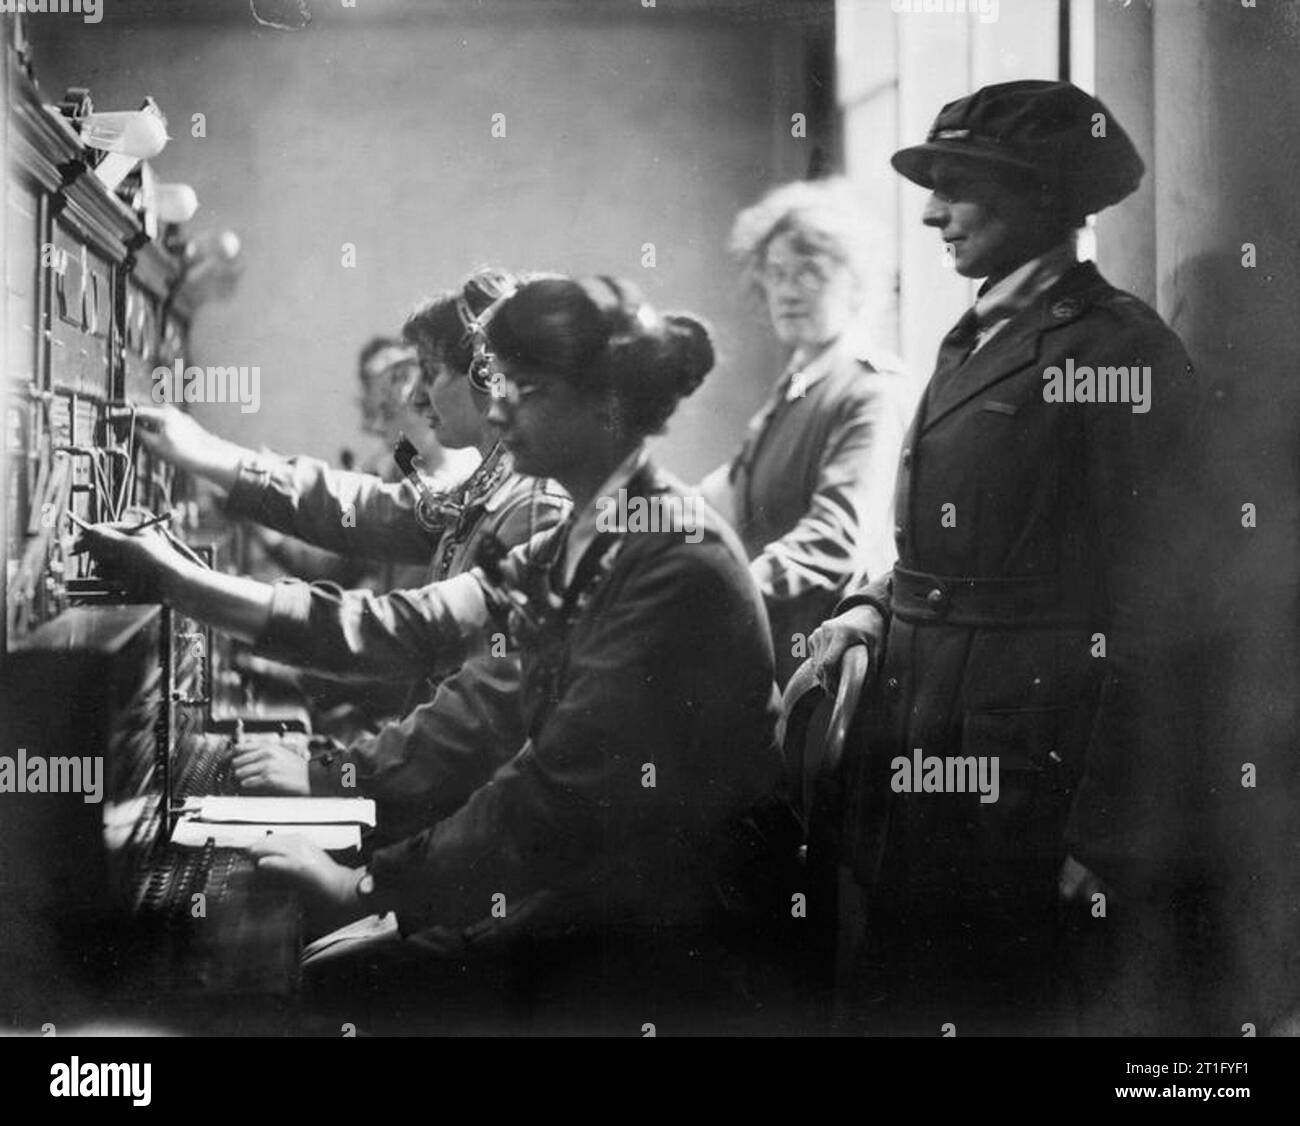 Olivenöl Edis; Iwm Fotograf der Leistungen der Frauen in Frankreich 1919 Queen Mary's Army Auxiliary Corps Betreiber von Miss Niedrig, stellvertretender Controller in einer Telefonzentrale in Le Havre, Frankreich, ca. 1919 begleitet. Stockfoto